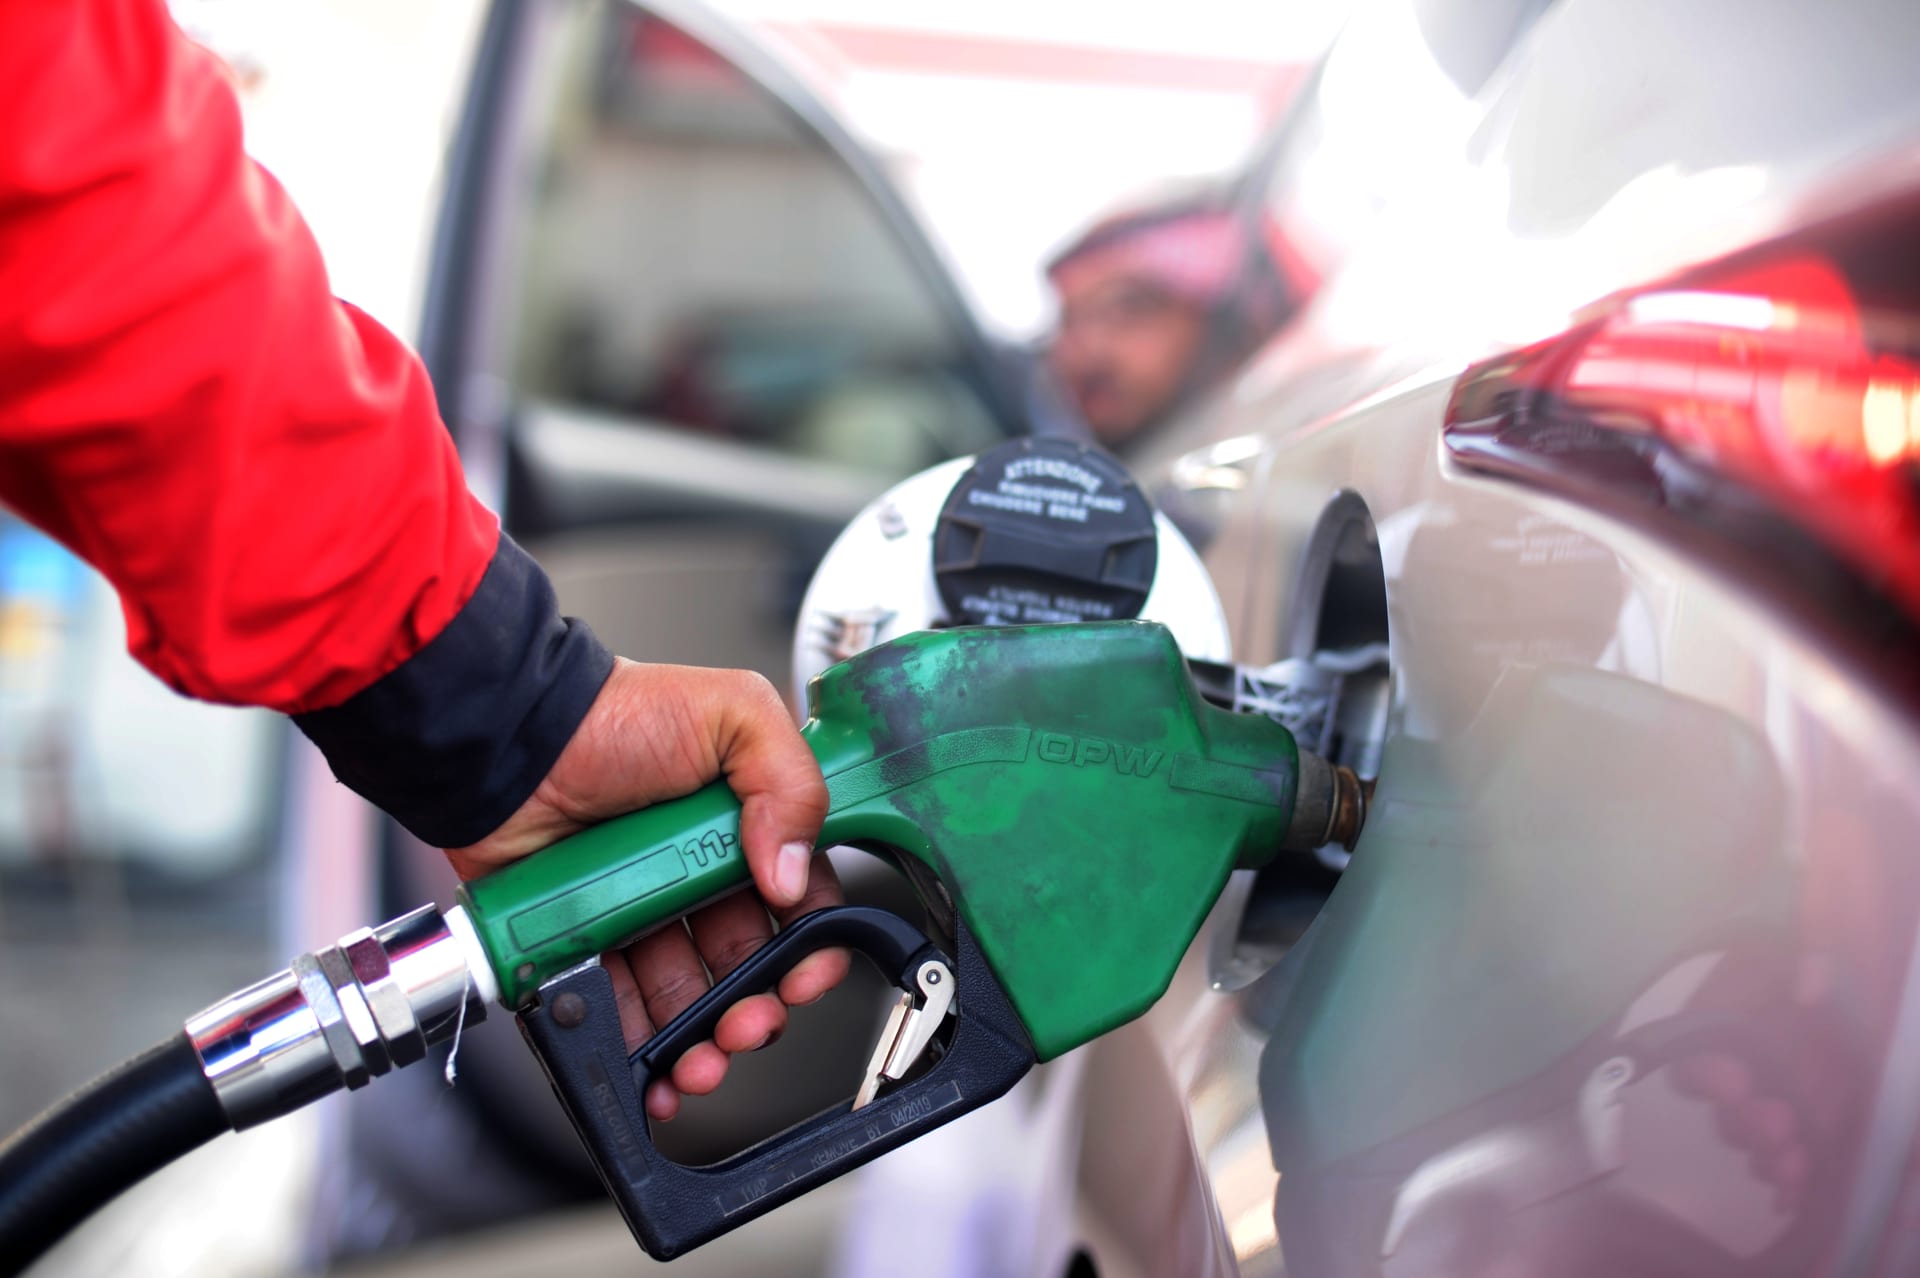 جدول اسعار البنزين فى السعودية لشهر يوليو 2021 الجديدة بعد تحديثات Aramco ارامكو لمراجعة سعر بنزين 91 وبنزين 95